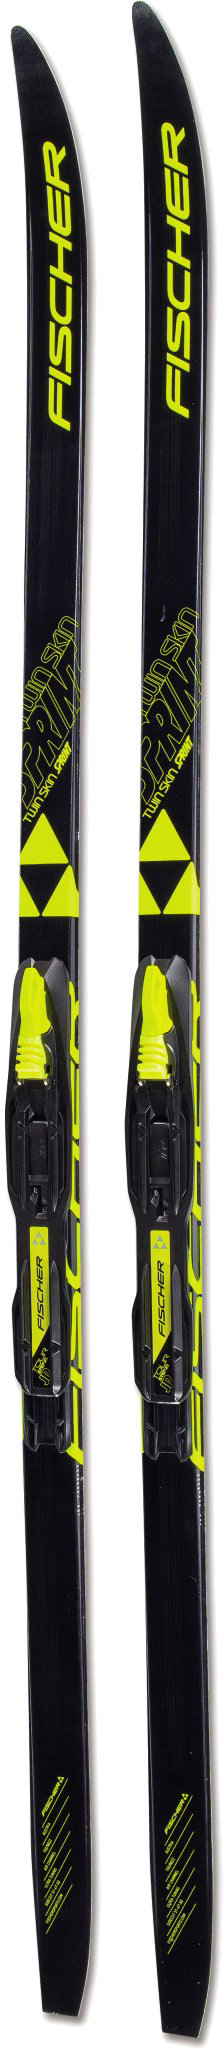 Лижі для новачків Fischer Twin Skin Sprint IFP Jr 100 см